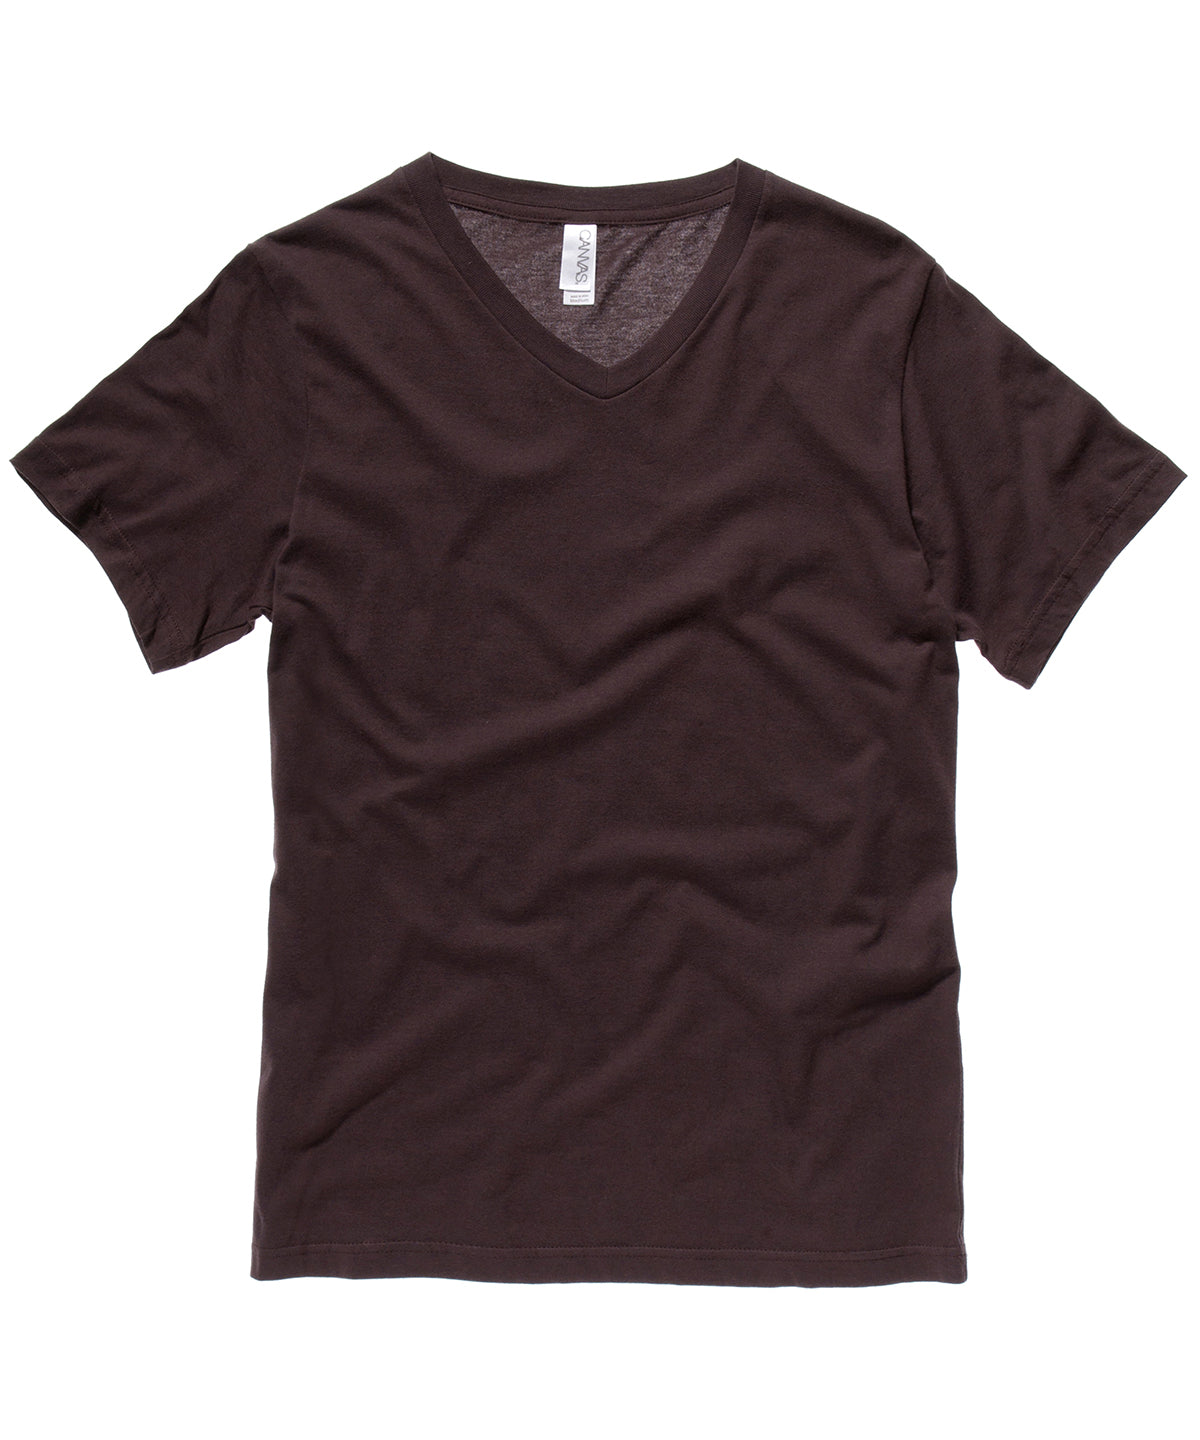 Stuttermabolir - Unisex Jersey V-neck T-shirt